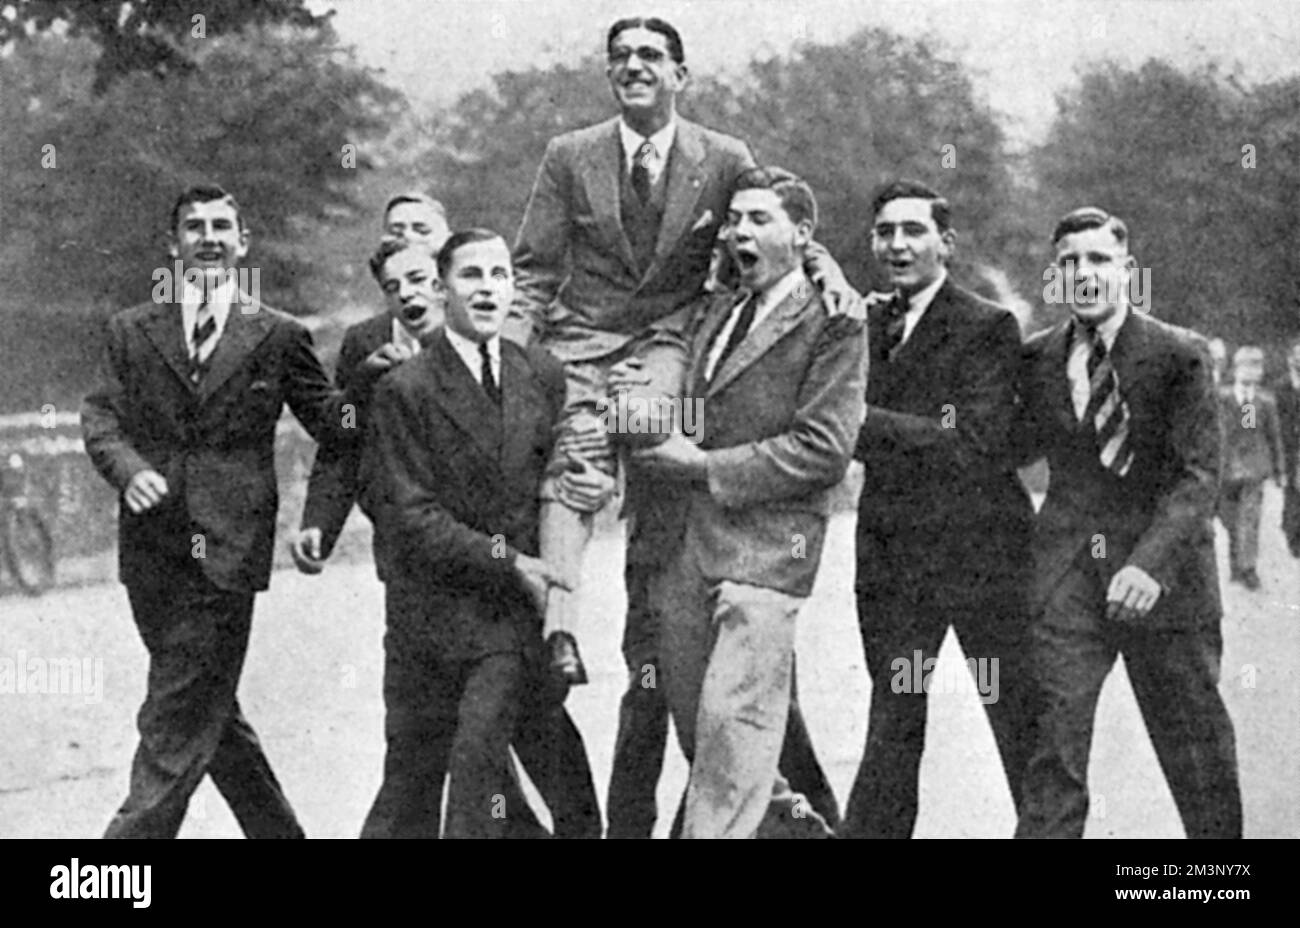 Thomas "Tommy" Hampson (1907 1965), atleta britannico, vincitore dei 800 metri alle Olimpiadi estive di Los Angeles del 1932, raffigurato sulle spalle dei ragazzi di St. Alban's School dove era un insegnante. Data: 1932 Foto Stock